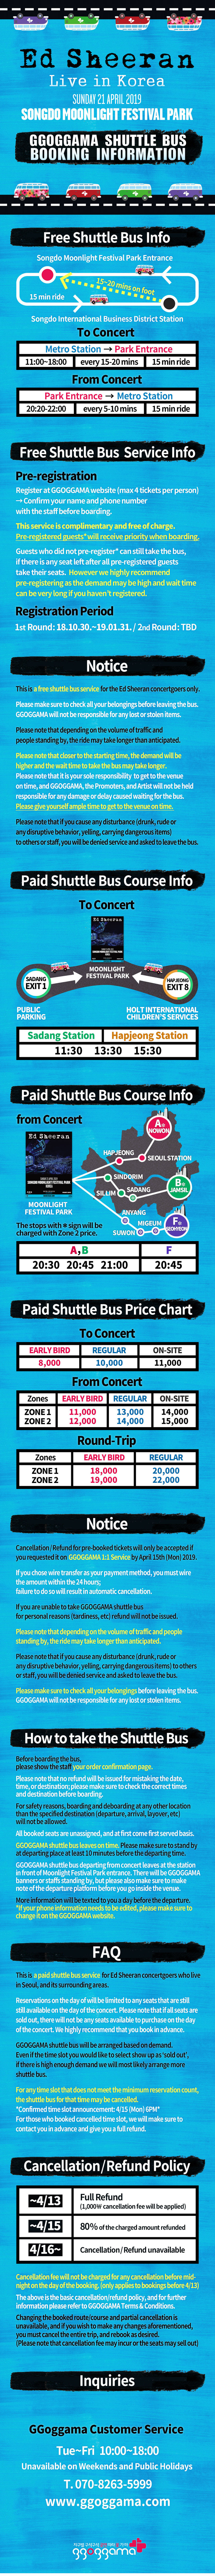 [Ed Sheeran] Shuttle Bus Booking Information